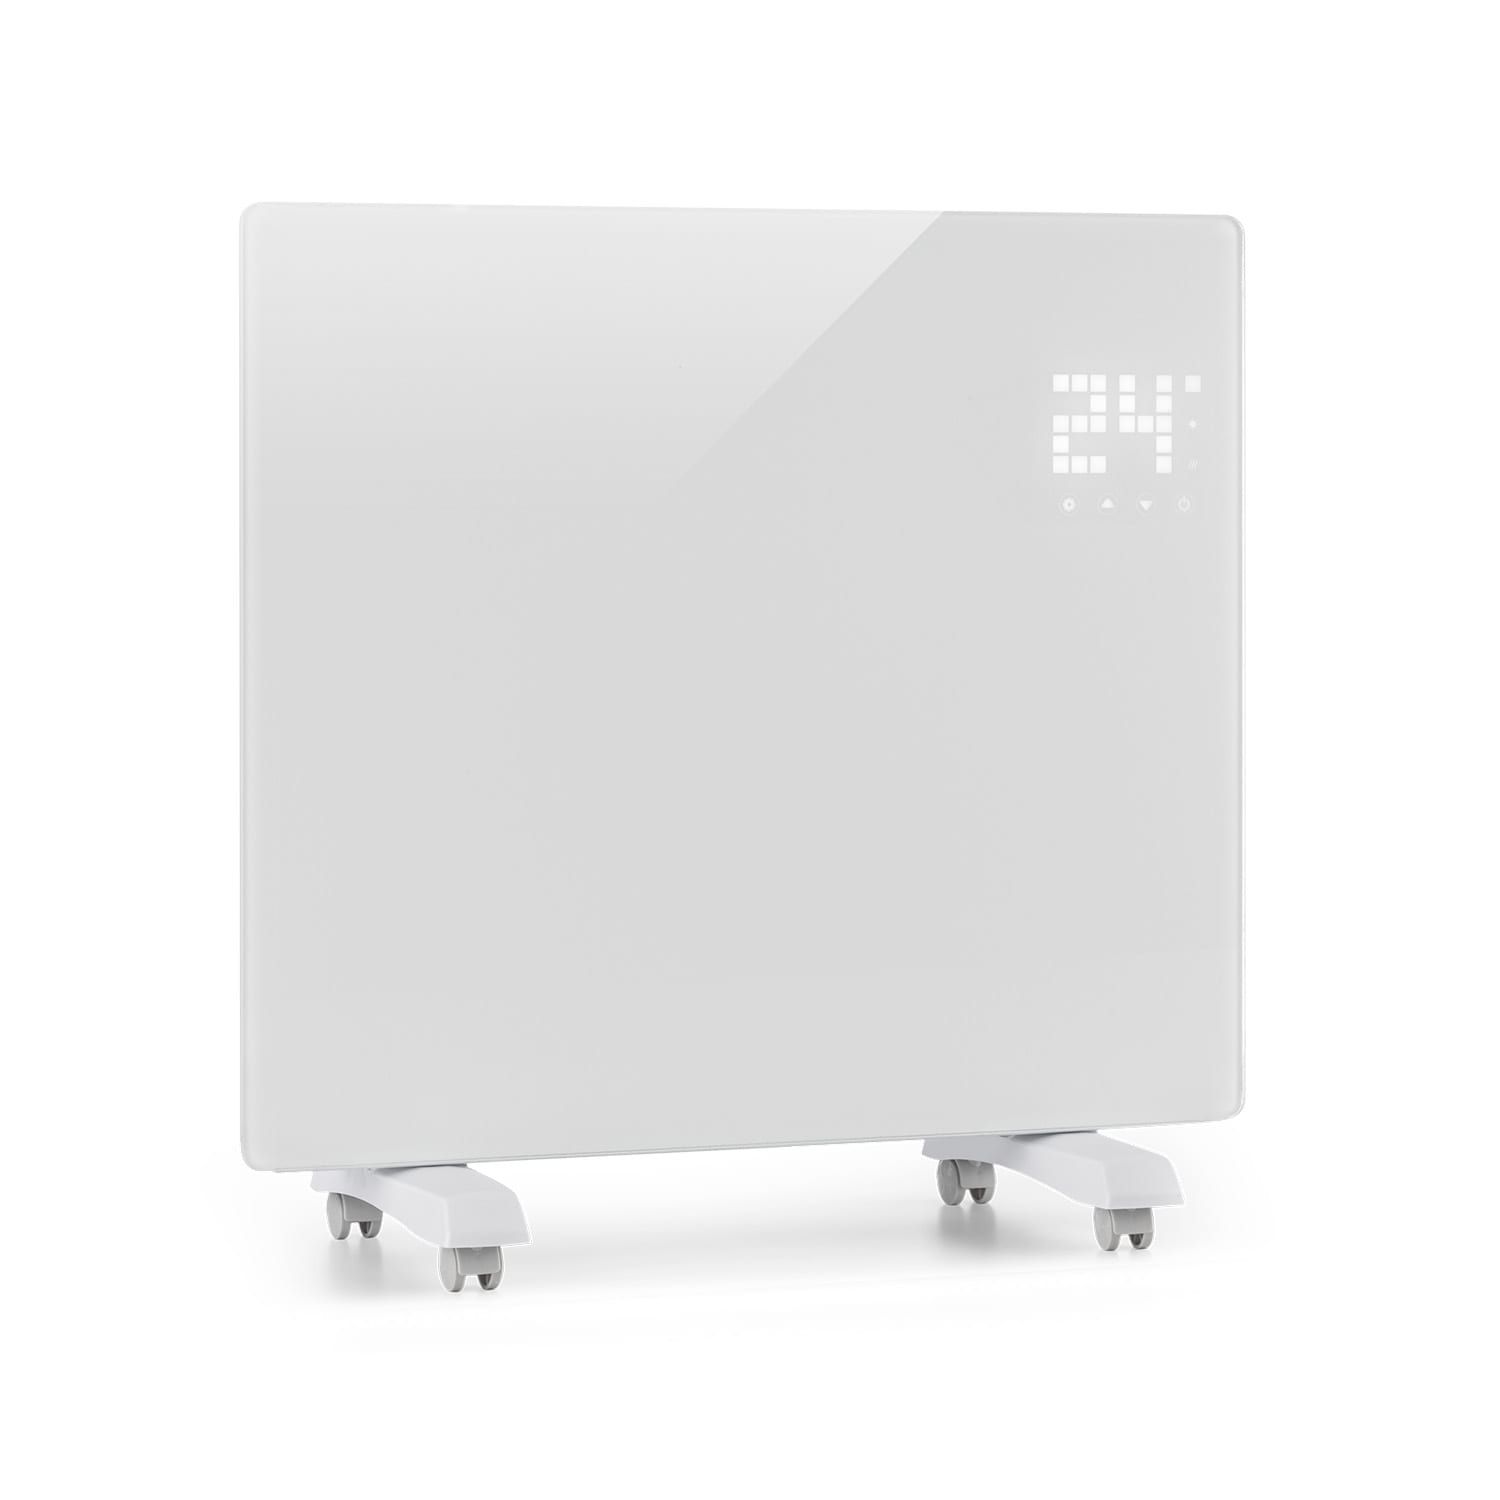 Klarstein Bornholm Single, konvektor, termostat, časovač, 1000 W, biely